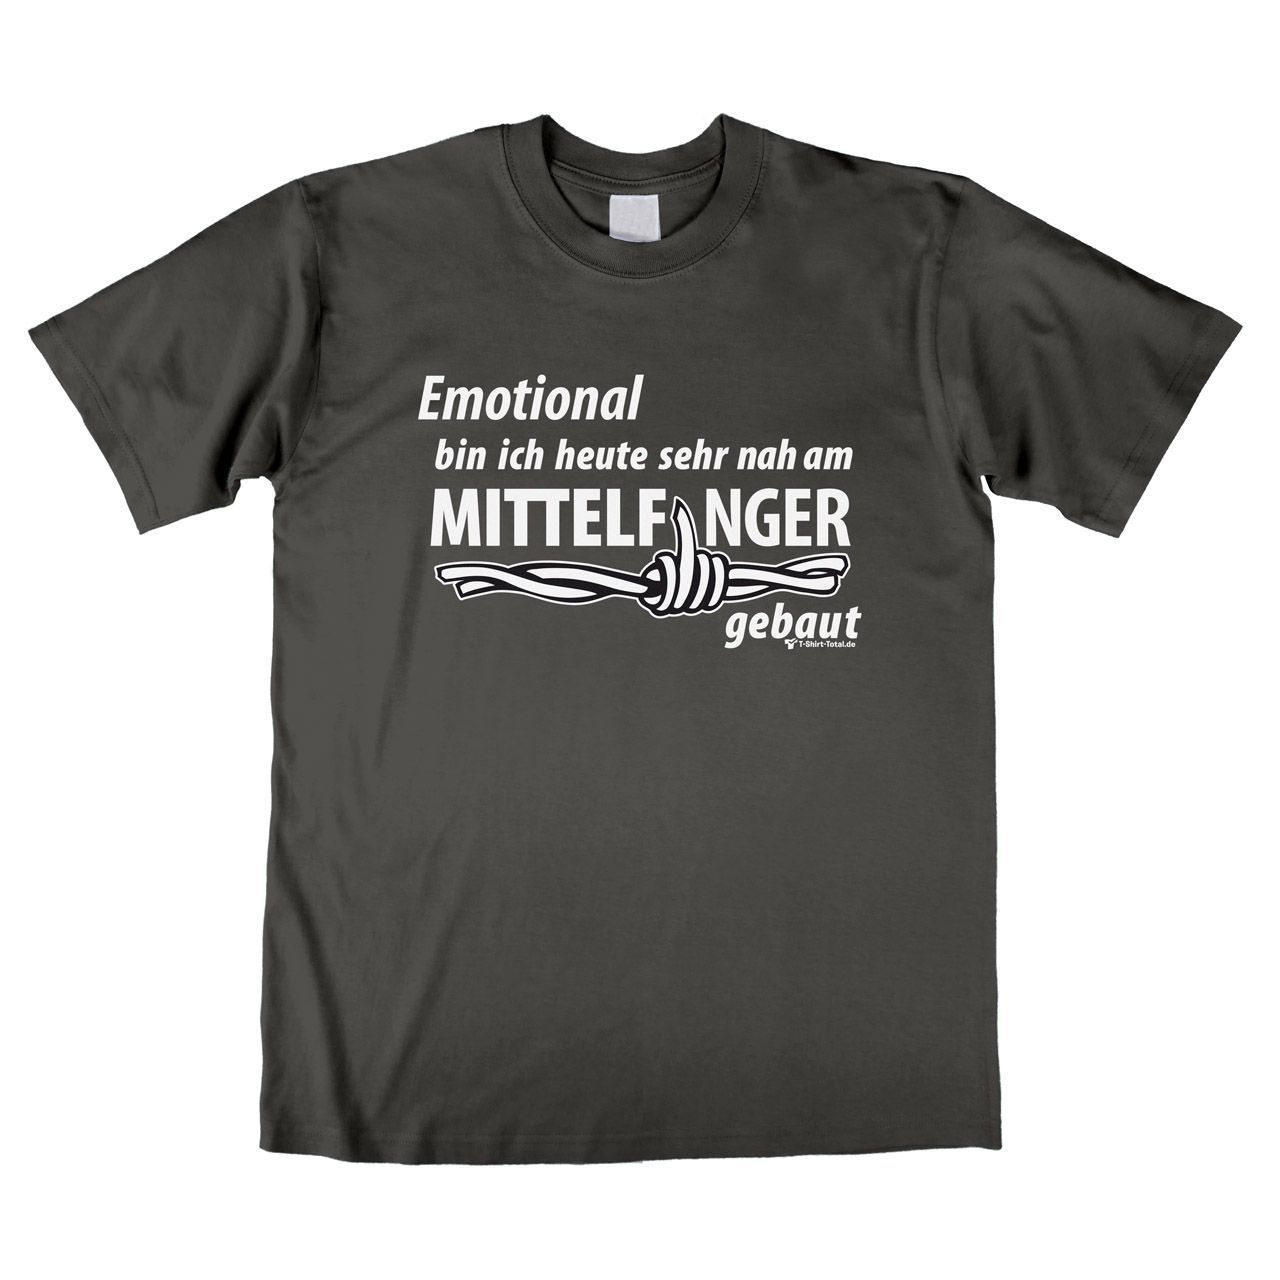 Mittelfinger Unisex T-Shirt grau Extra Large